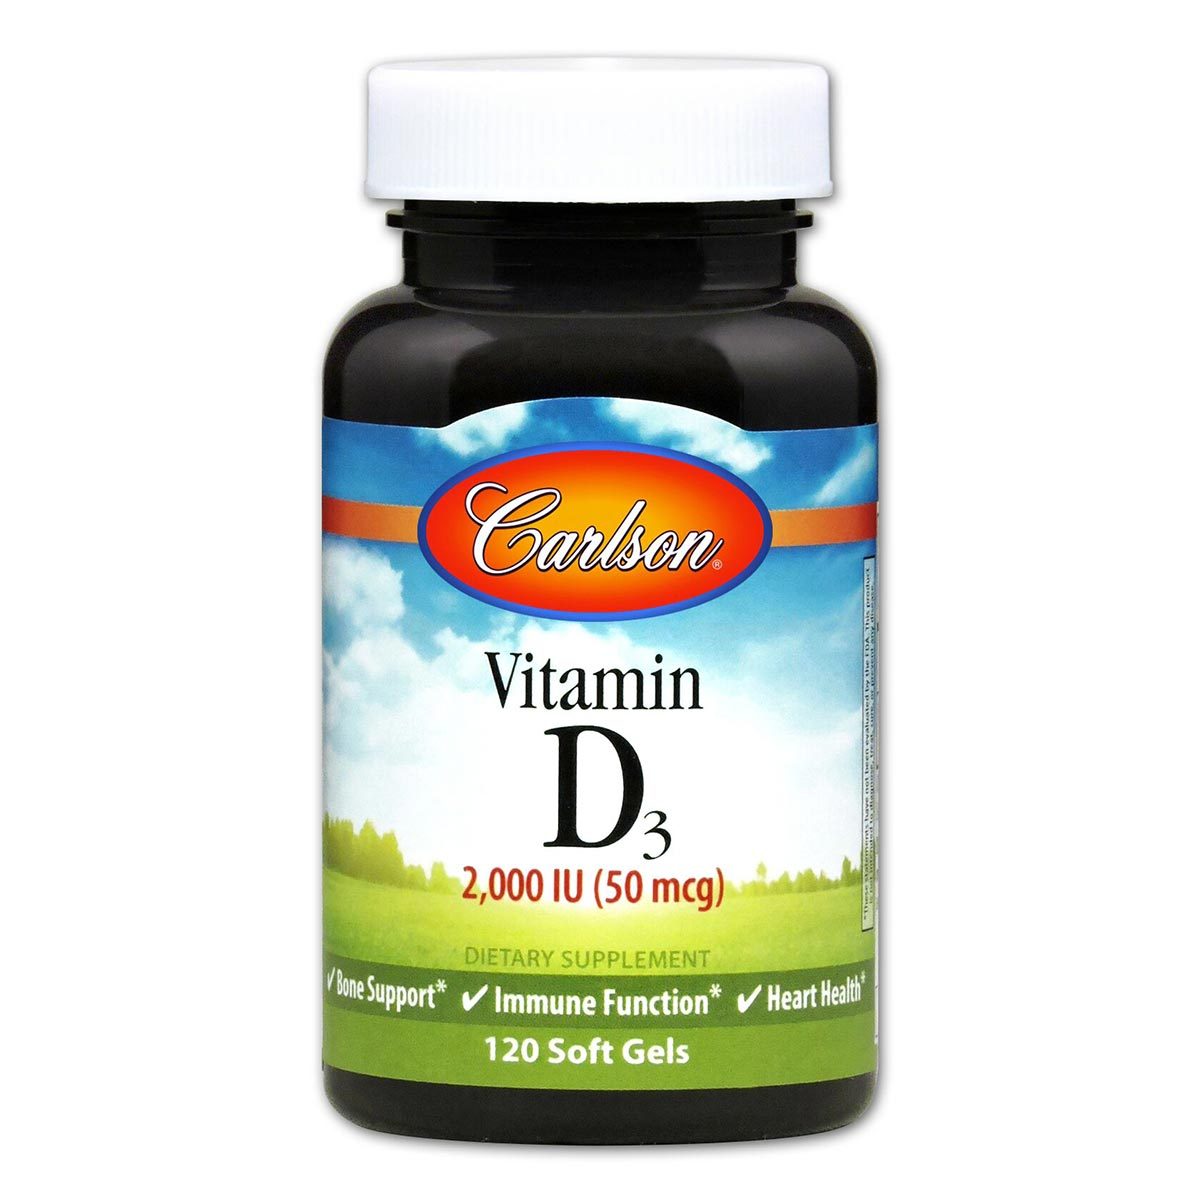 Primary image of Vitamin D3 2000IU